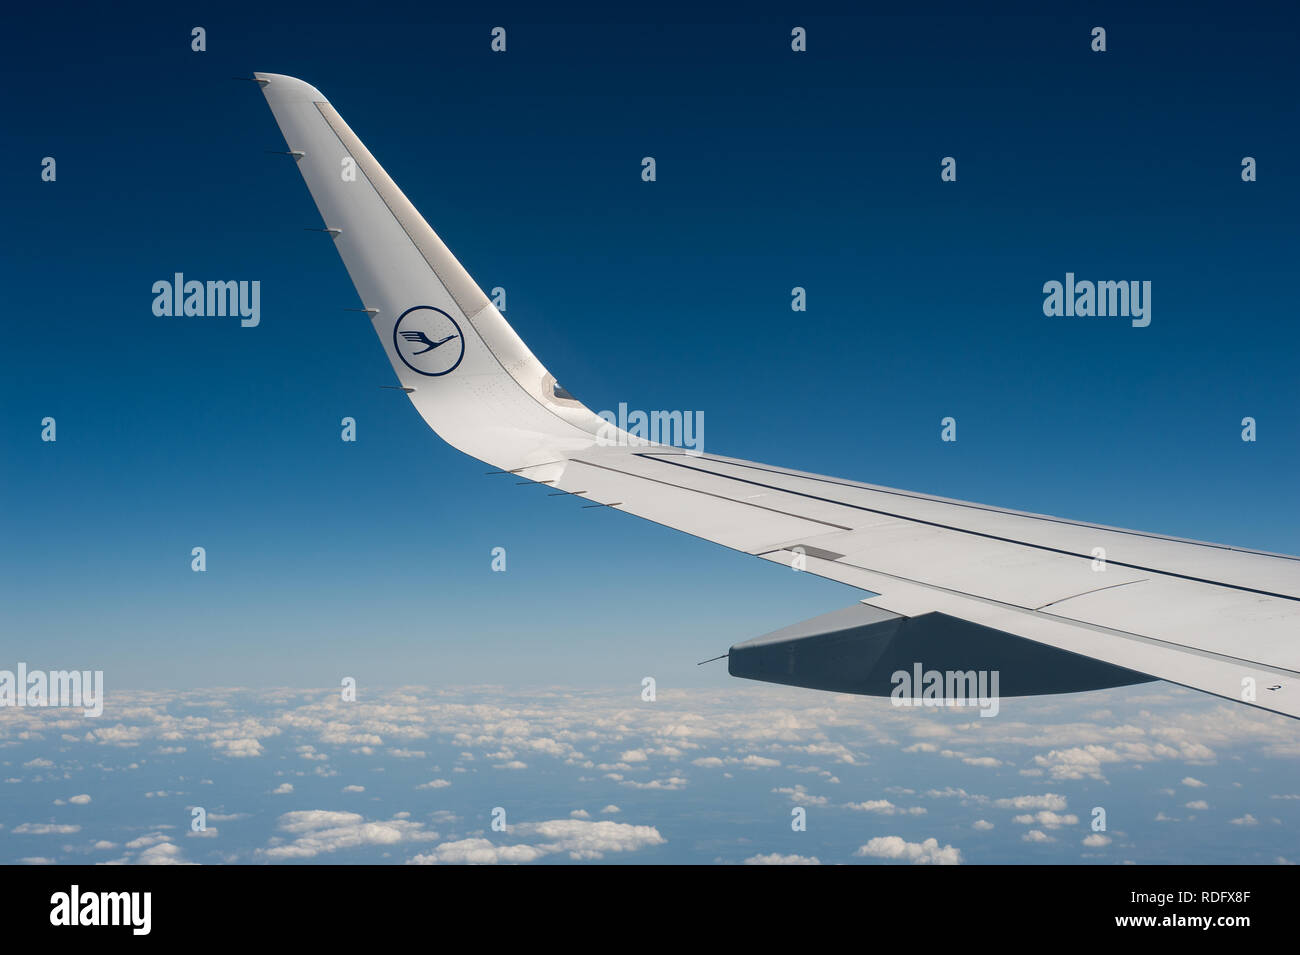 02.06.2017 - München, Bayern, Deutschland, Europa - auf einem Lufthansa Flug mit einem Airbus A320 von Berlin nach München. Stockfoto